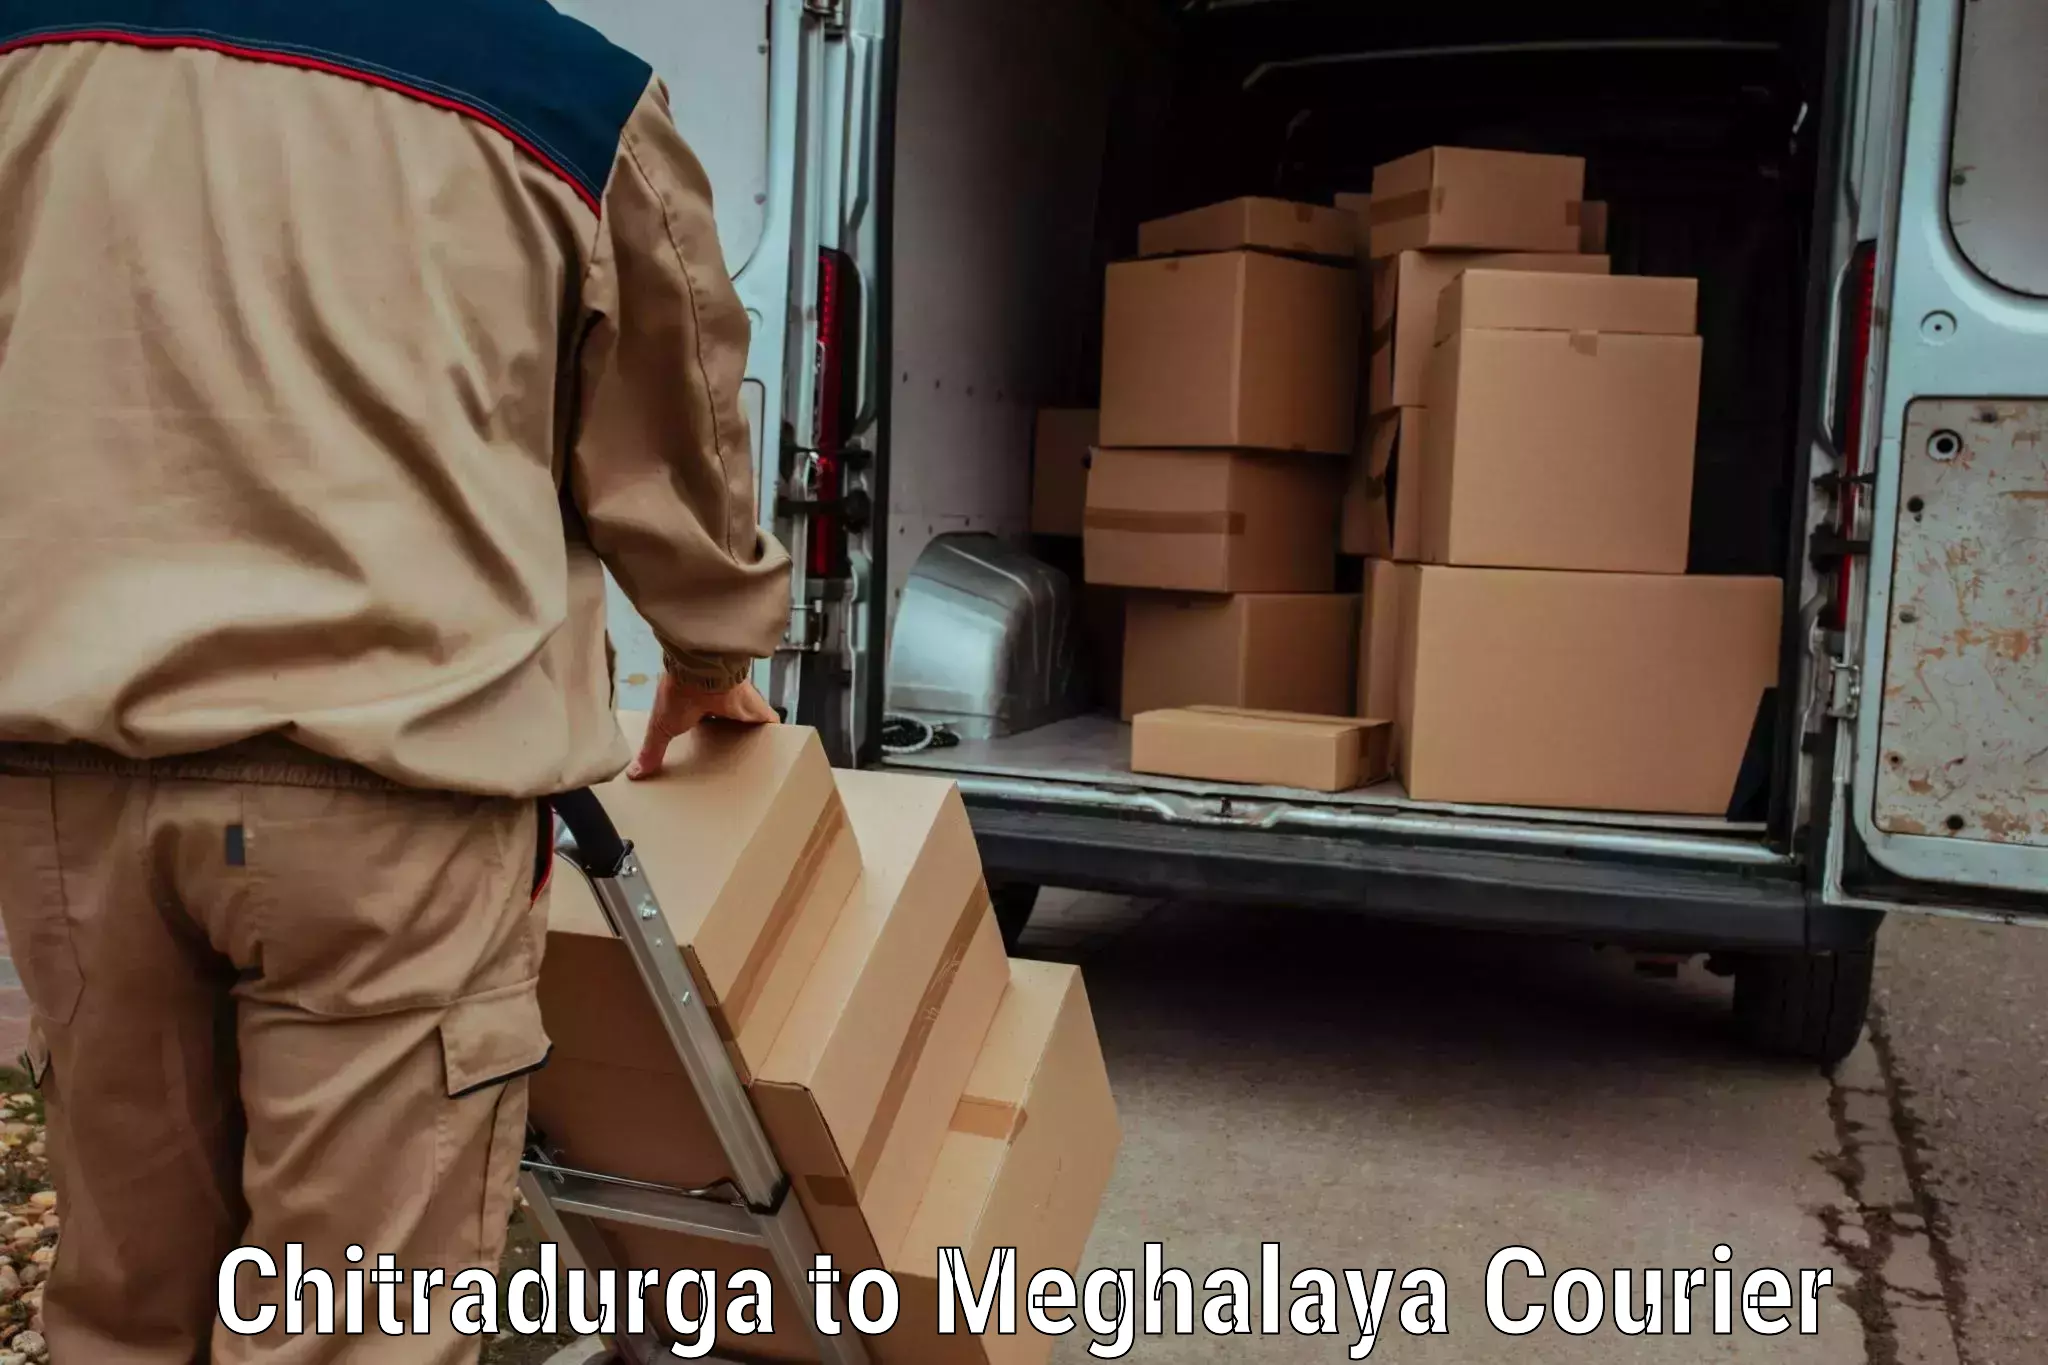 Excess baggage transport in Chitradurga to Meghalaya